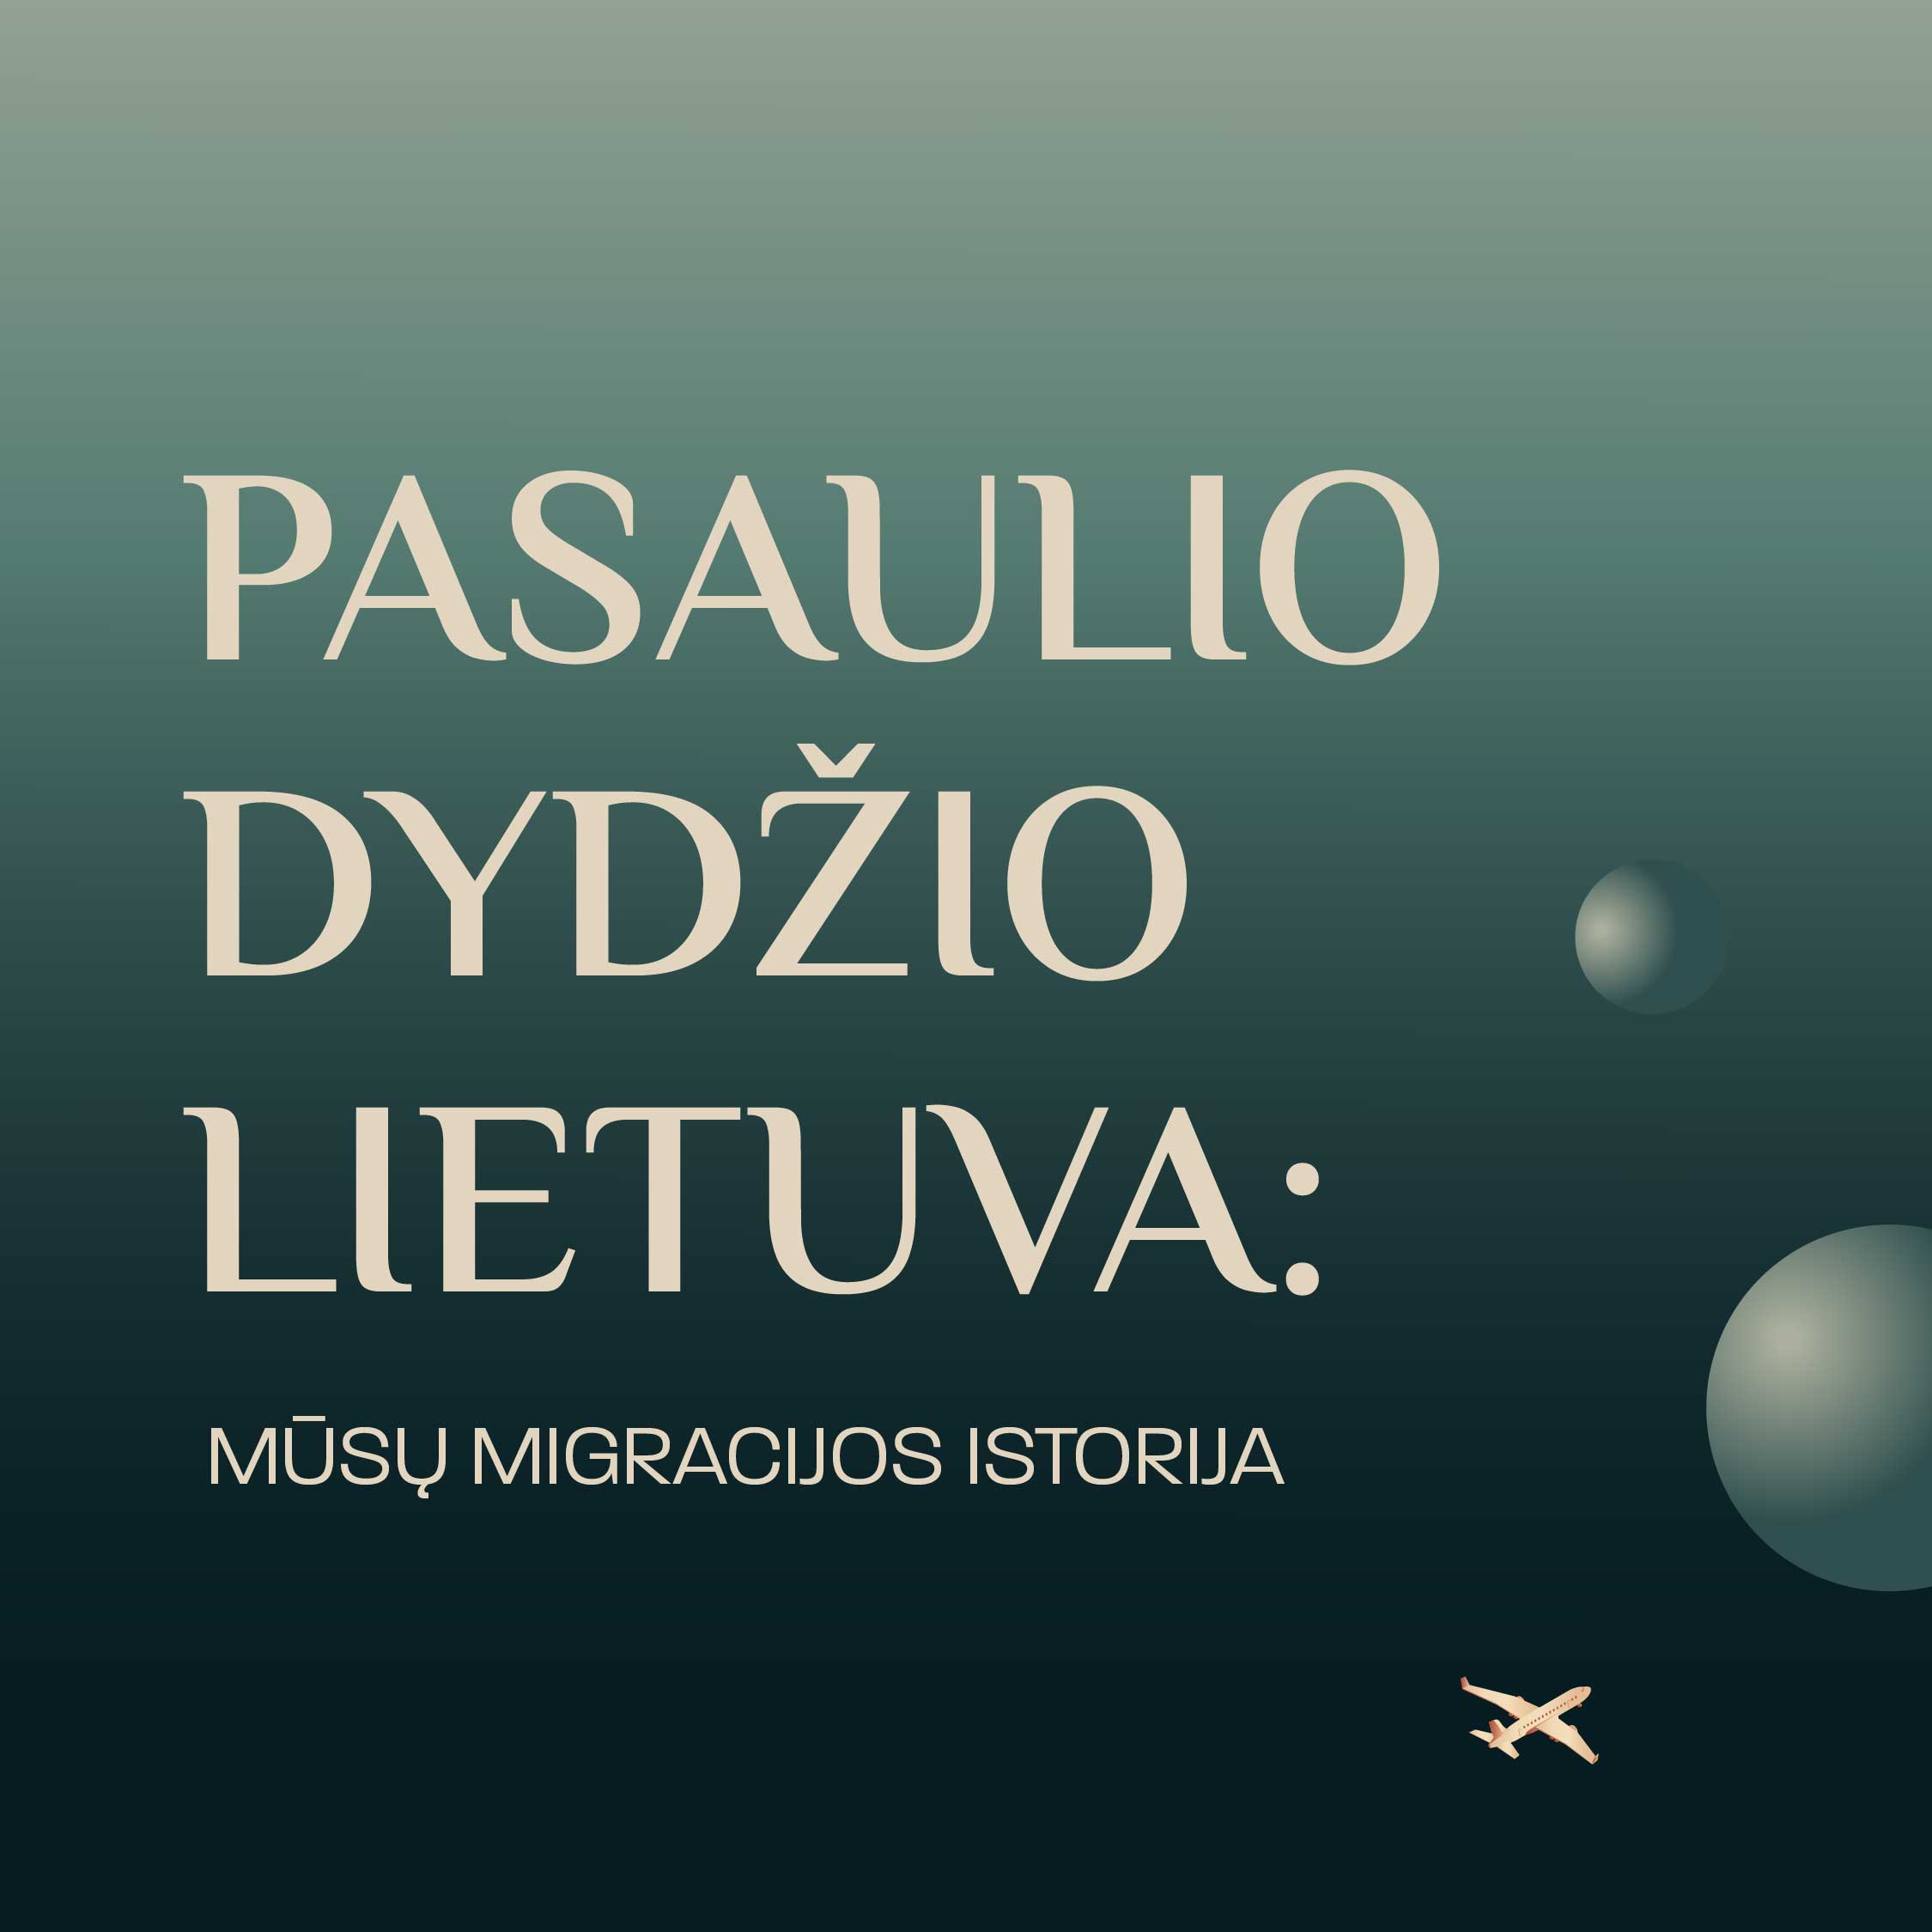 Lietuvos nacionalinis muziejus Pasaulio dydžio Lietuva: mūsų migracijos istorija